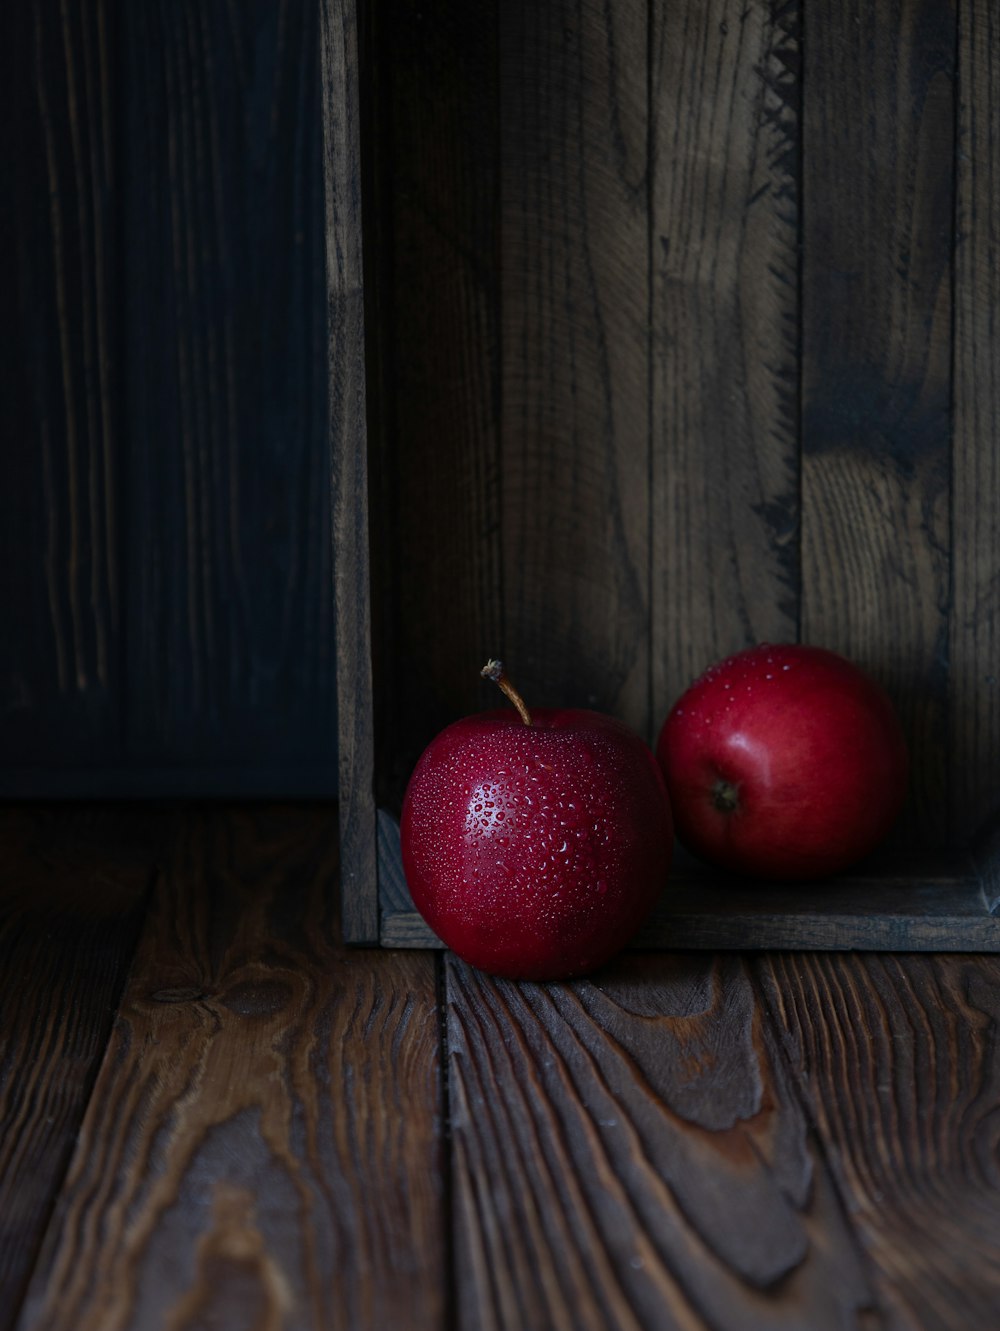 deux pommes rouges assises dans une caisse en bois